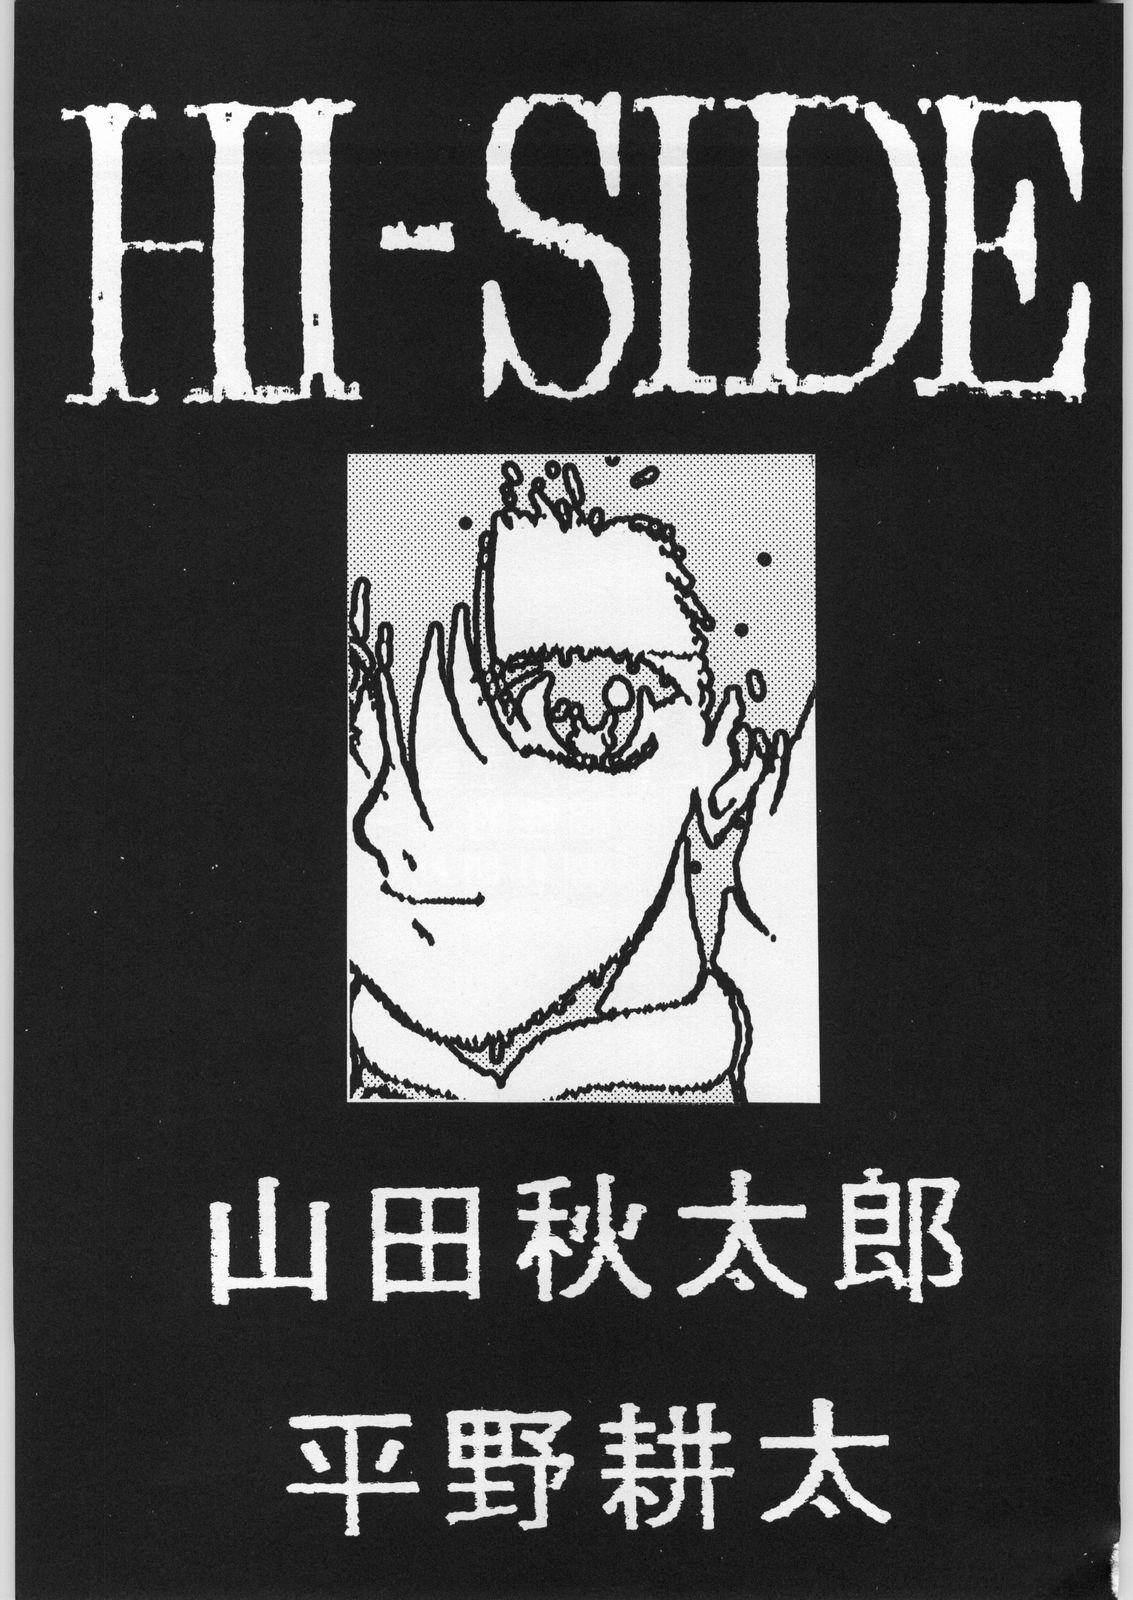 HI-SIDE 1 1